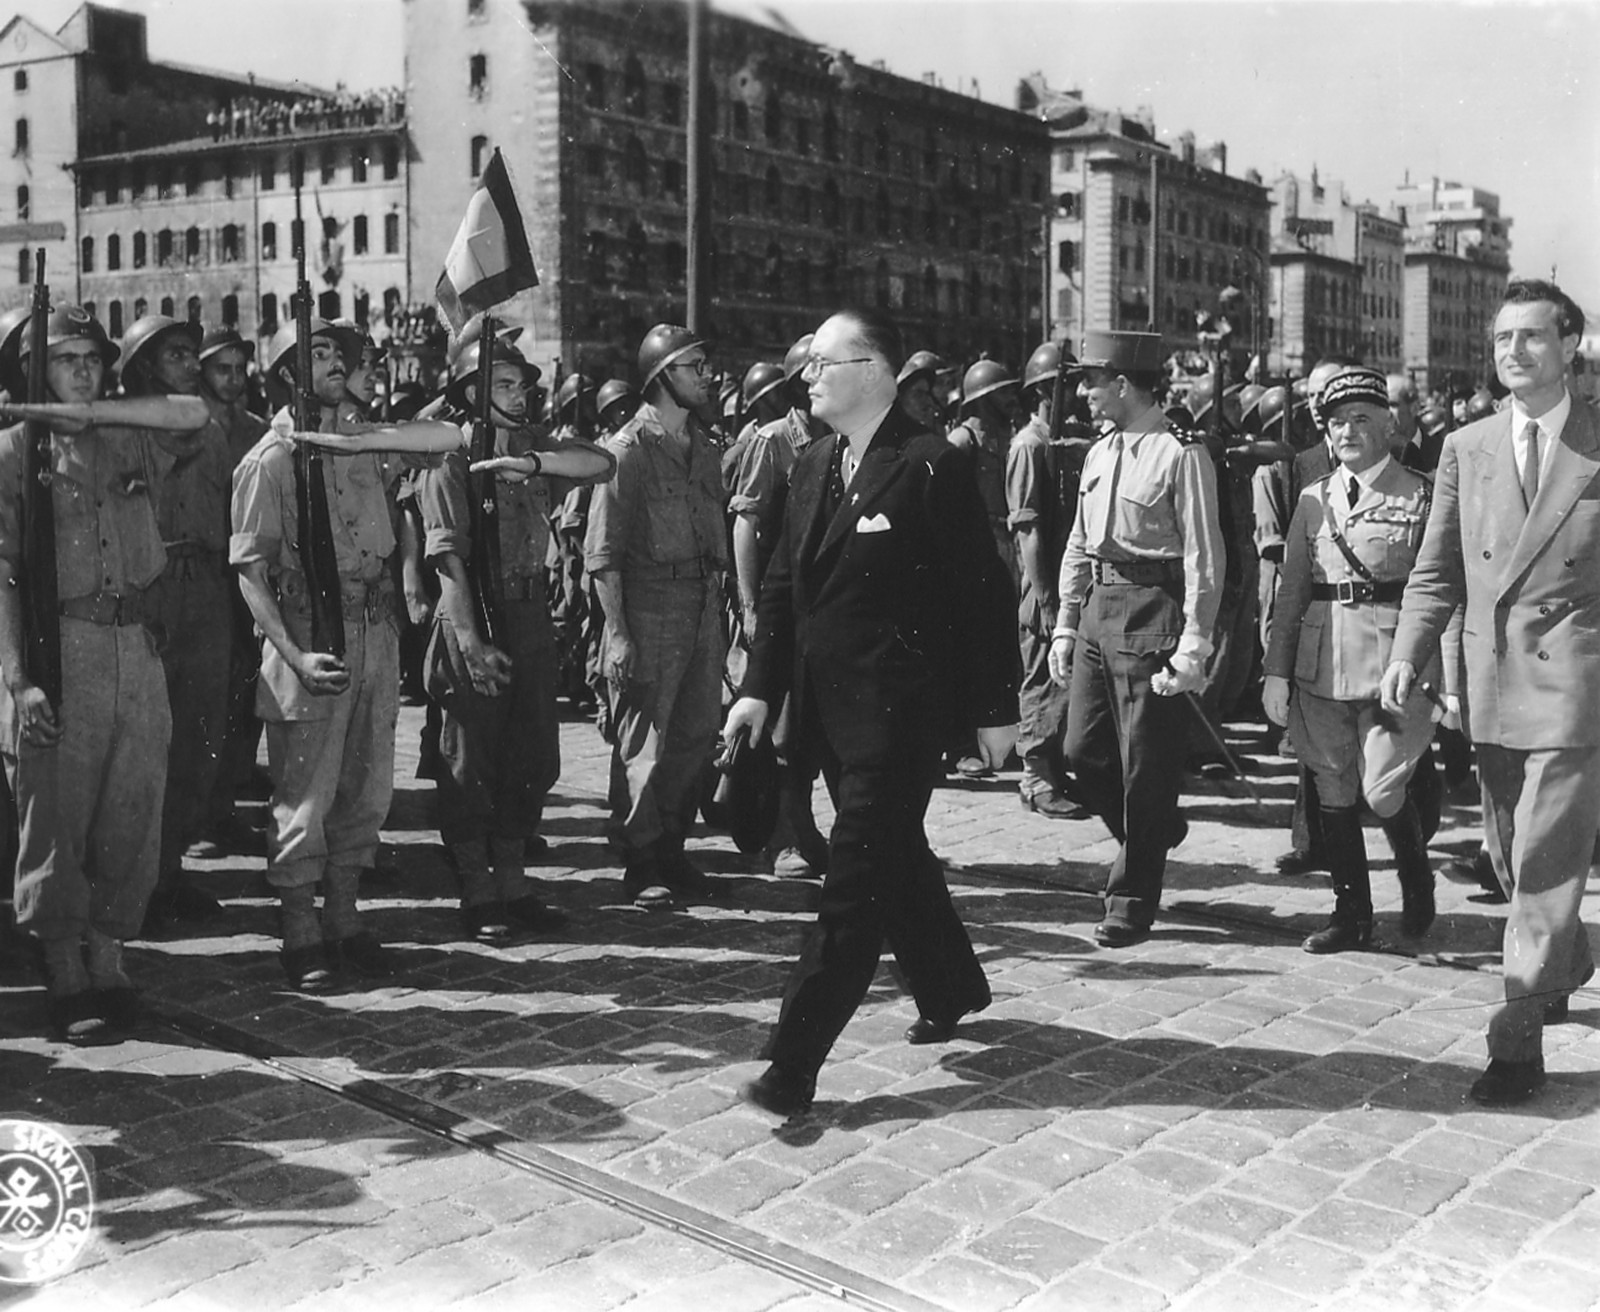 אנשי הממשלה הצרפתית הגולה צועדים במרסיי לאחר שחרורה מהנאצים, 29 אוגוסט 1944, מול משמר של אנשי רזיסטנס. עמנואל ד'סטייה, אשר כתב את המילים לשיר הפרטיזן, הוא האיש מימין בתמונה. צלם לא ידוע, מקור ויקיפדיה